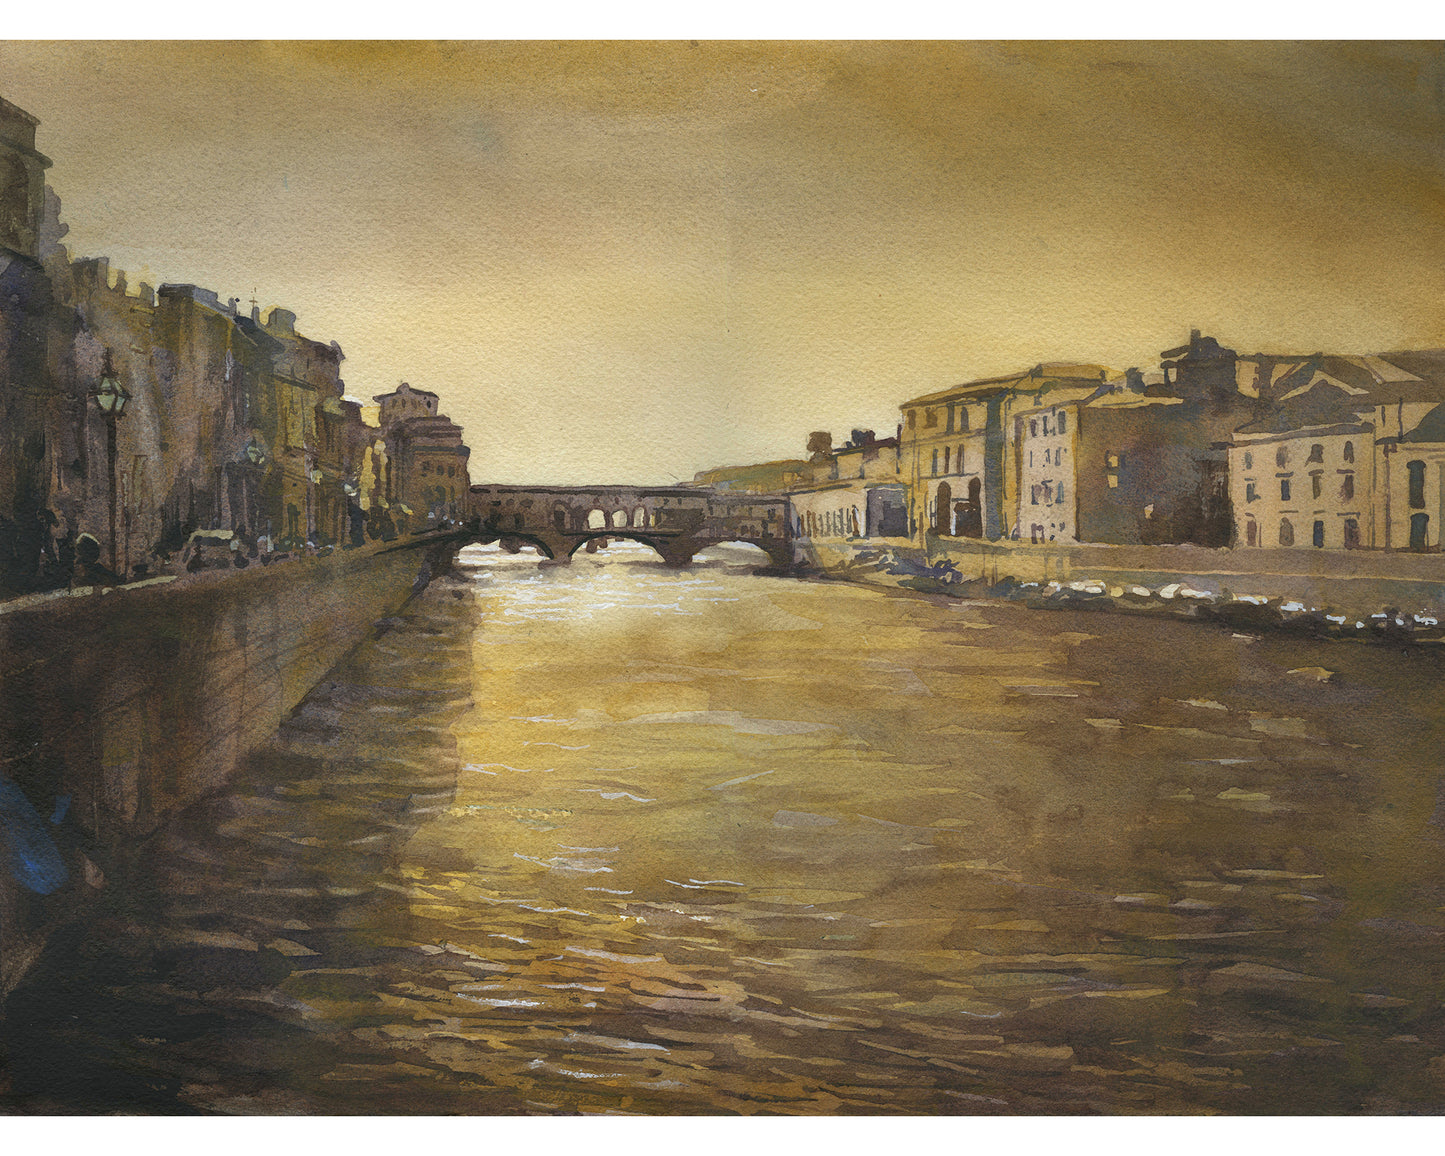 Ponte Vecchio bridge in medieval city of Florence, Italy.  Watercolor of Ponte Vecchio, Florence art (original)